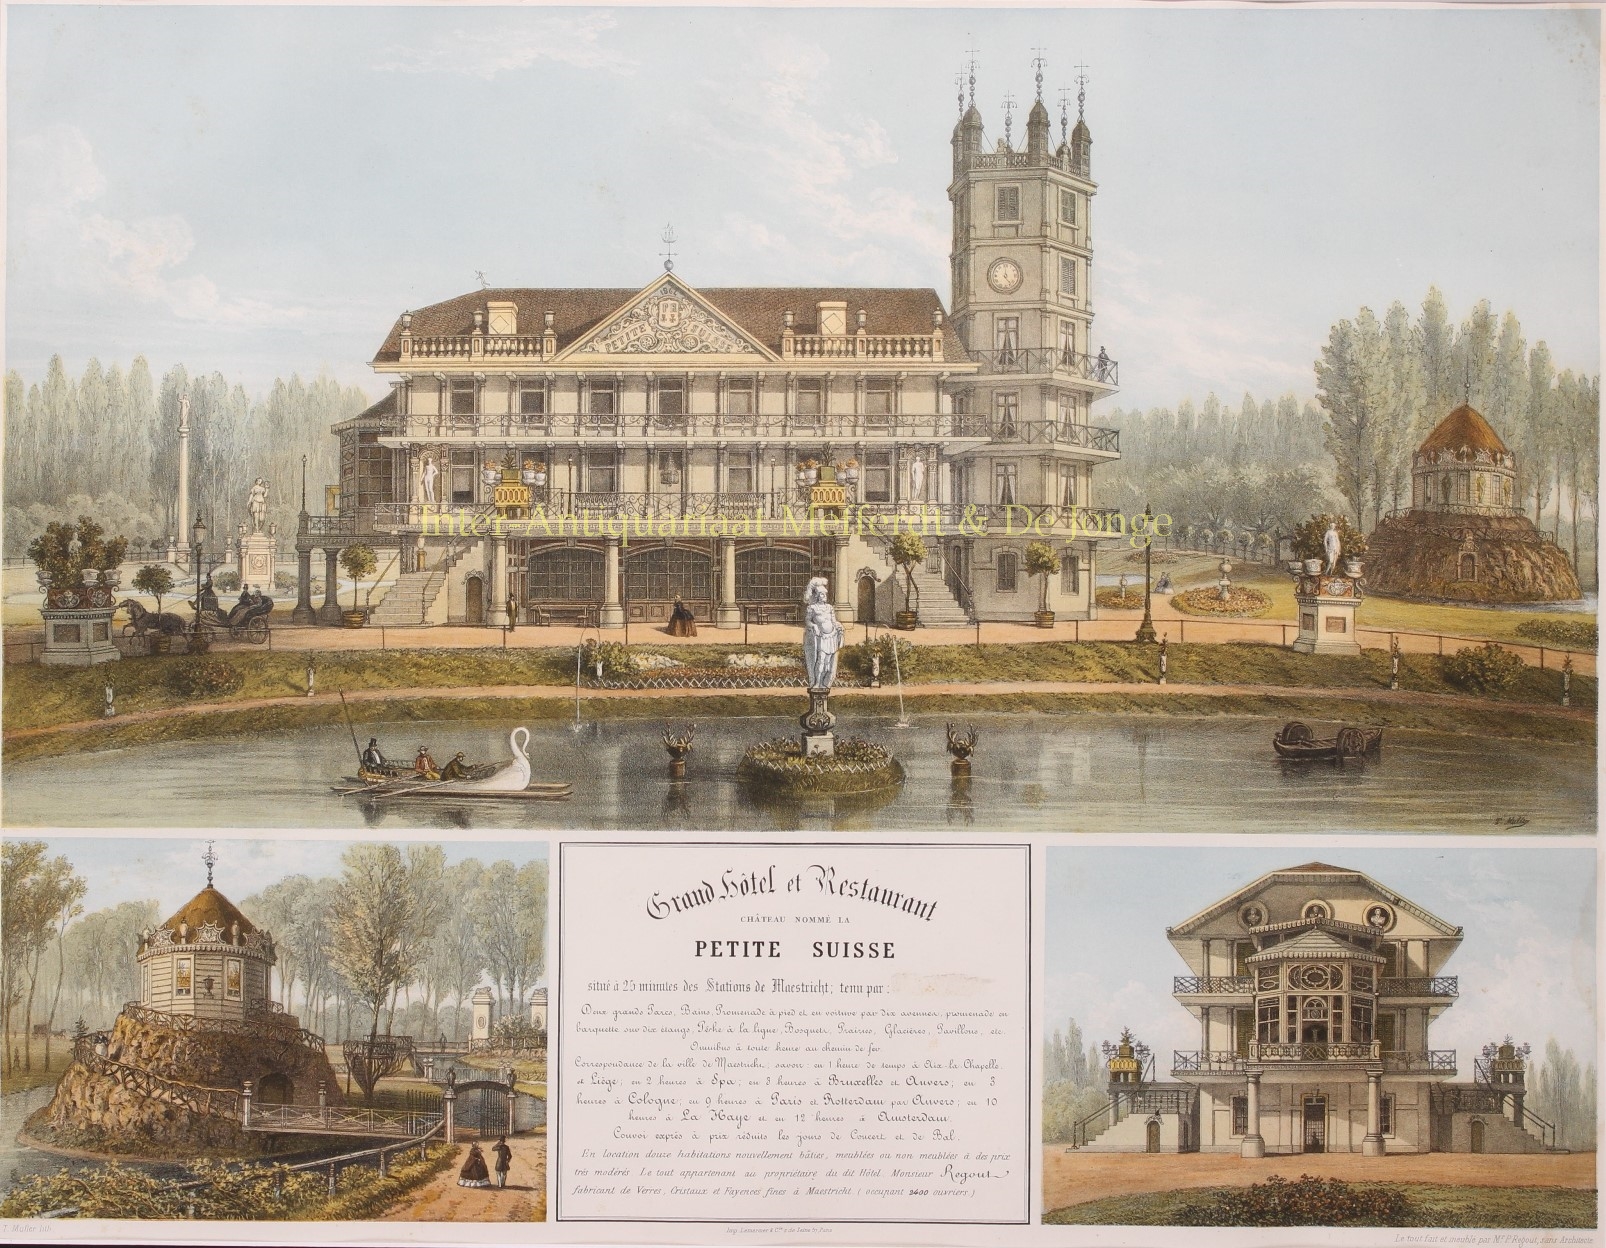  - Chateau La Petite Suisse (Villa Kanjel) - Theodore Mller + Lemercier, 1863